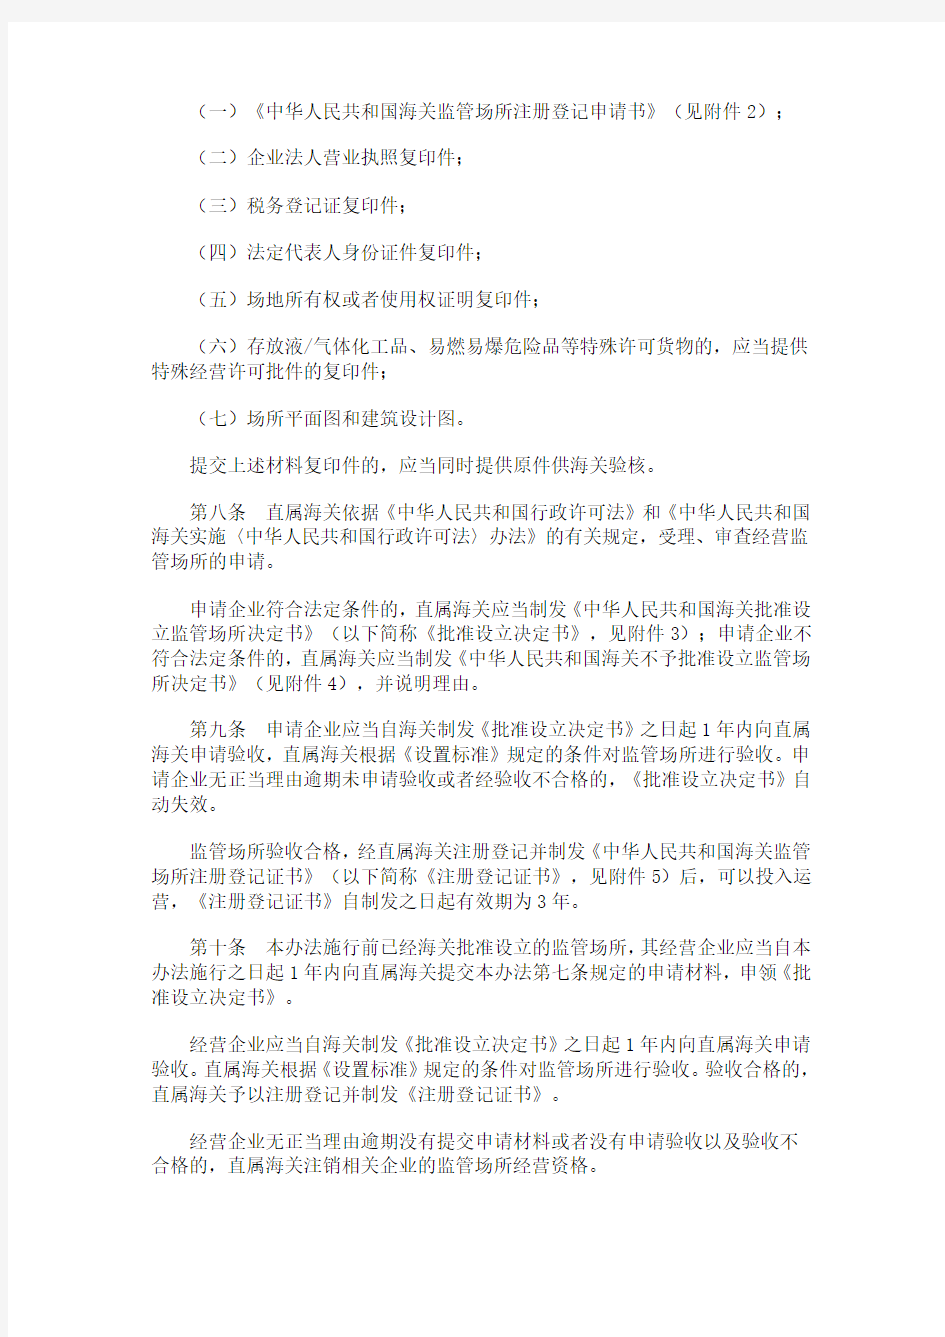 海关总署第171号令《中华人民共和国海关监管场所管理办法》